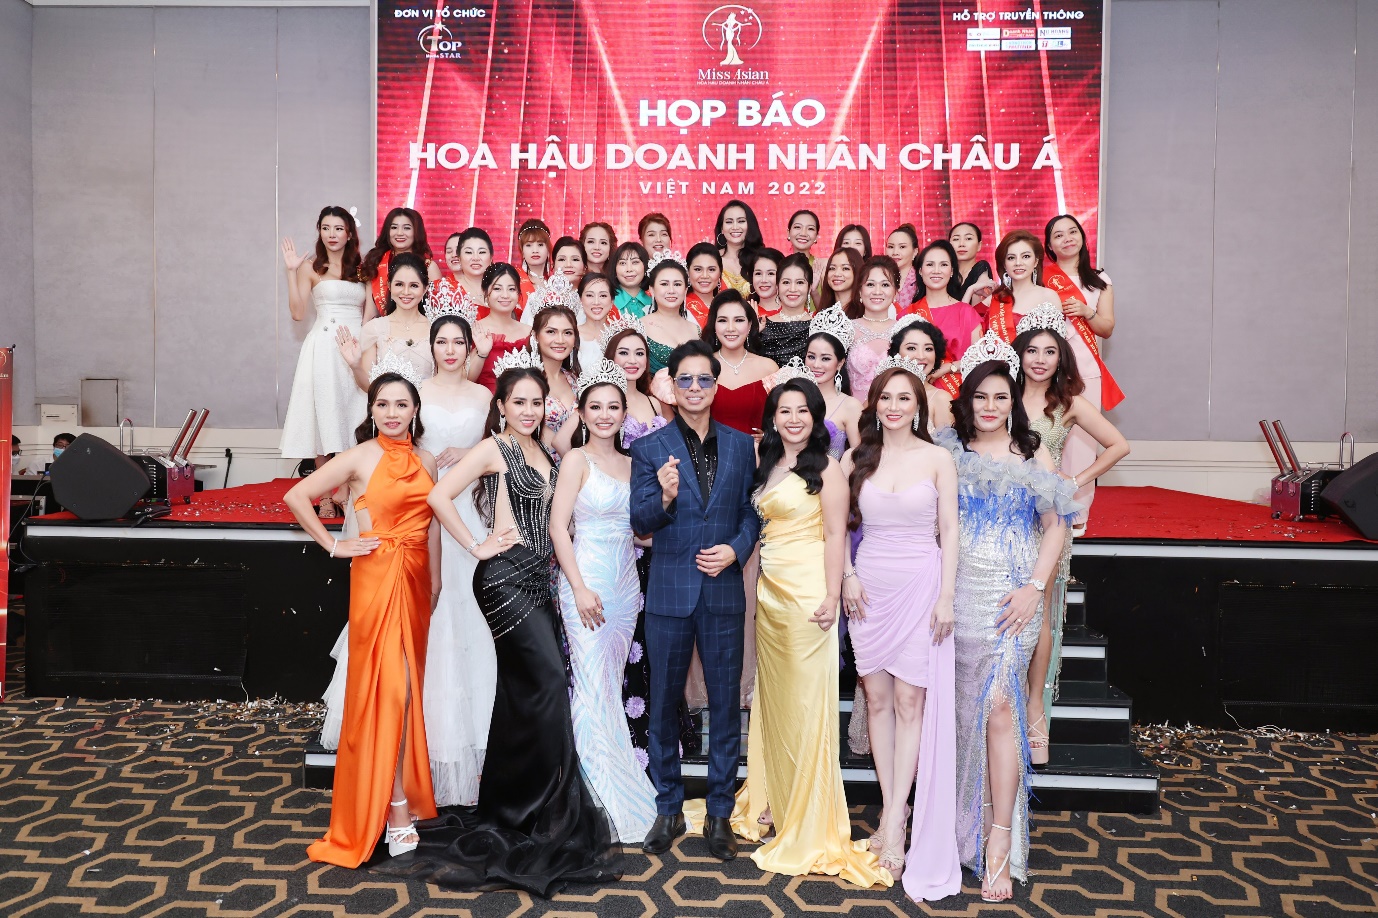 Khởi động cuộc thi Hoa hậu Doanh nhân Châu Á Việt Nam - 2